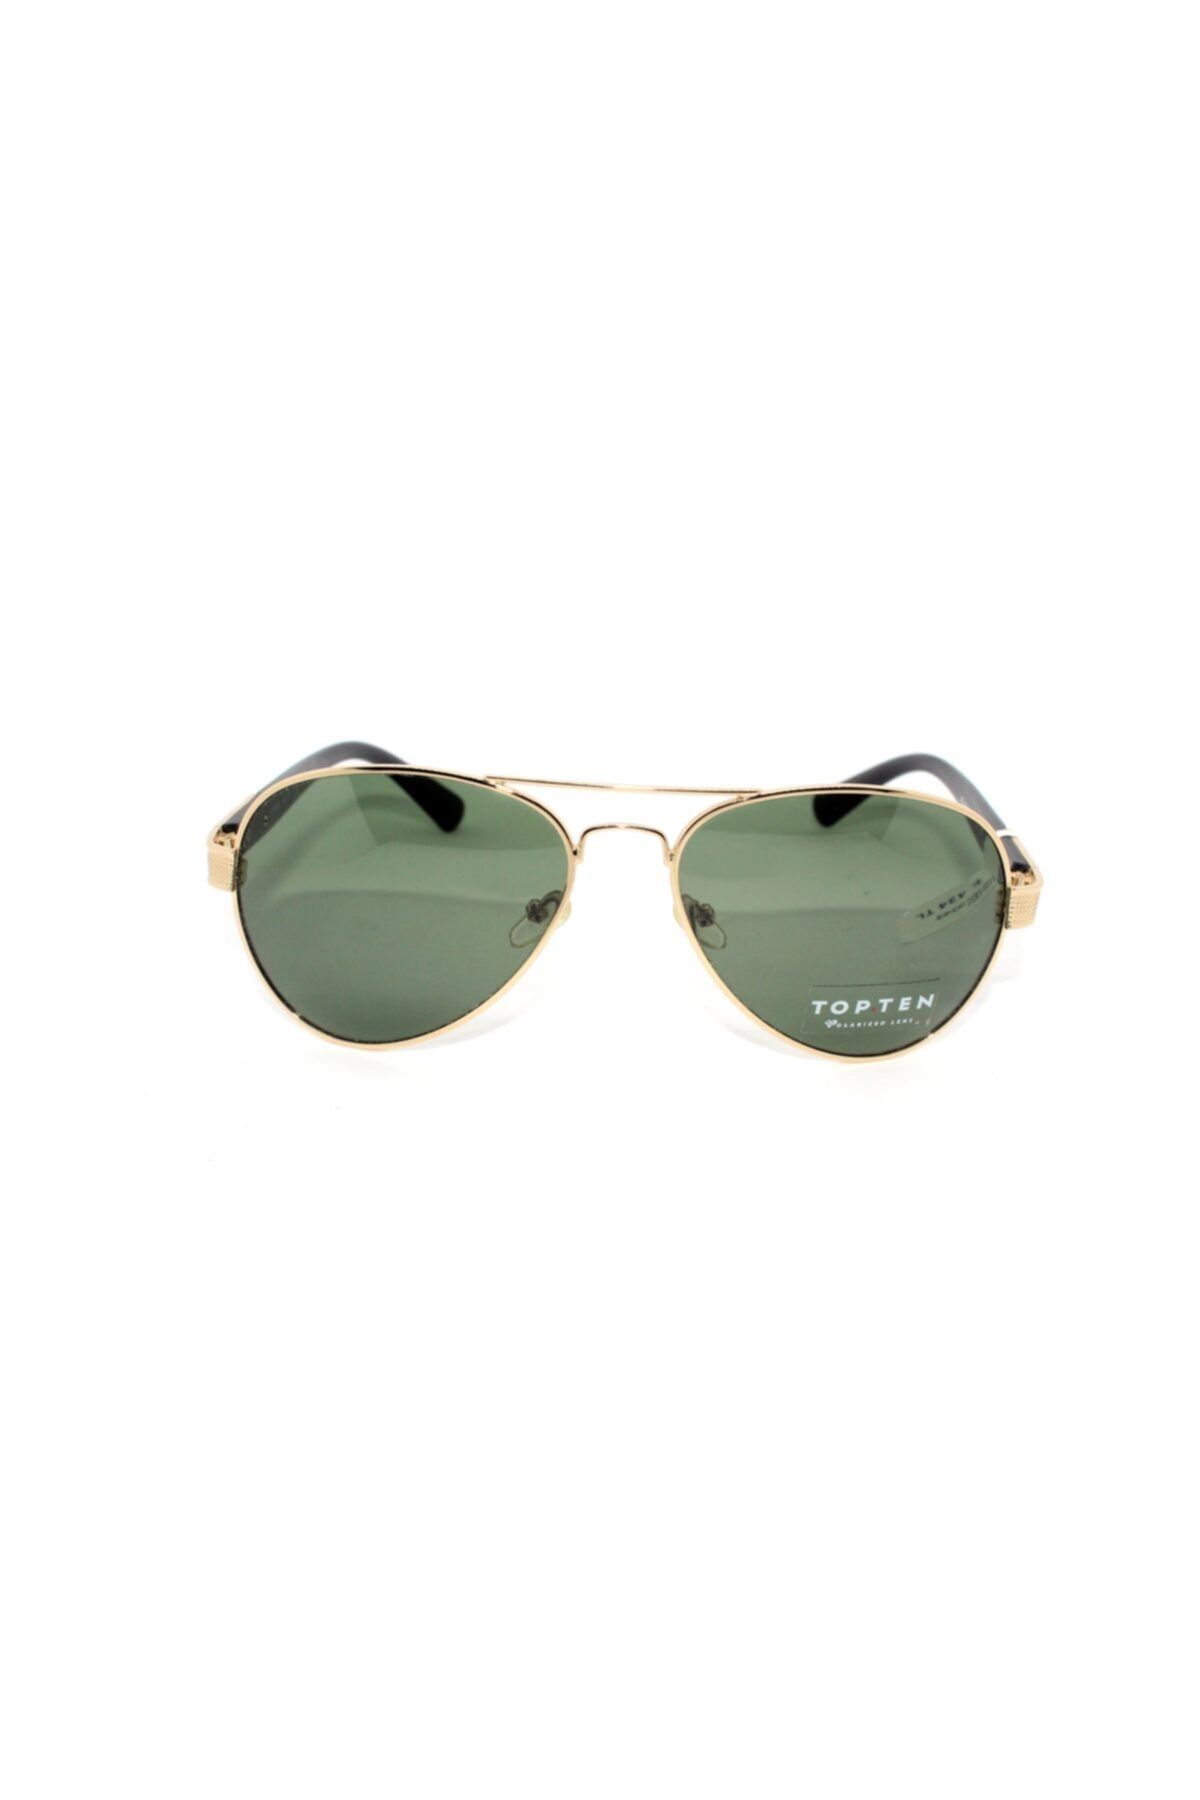 Topten Eyewear Yeşil Güneş Gözlüğü Ekartman M.7126 C.38 60